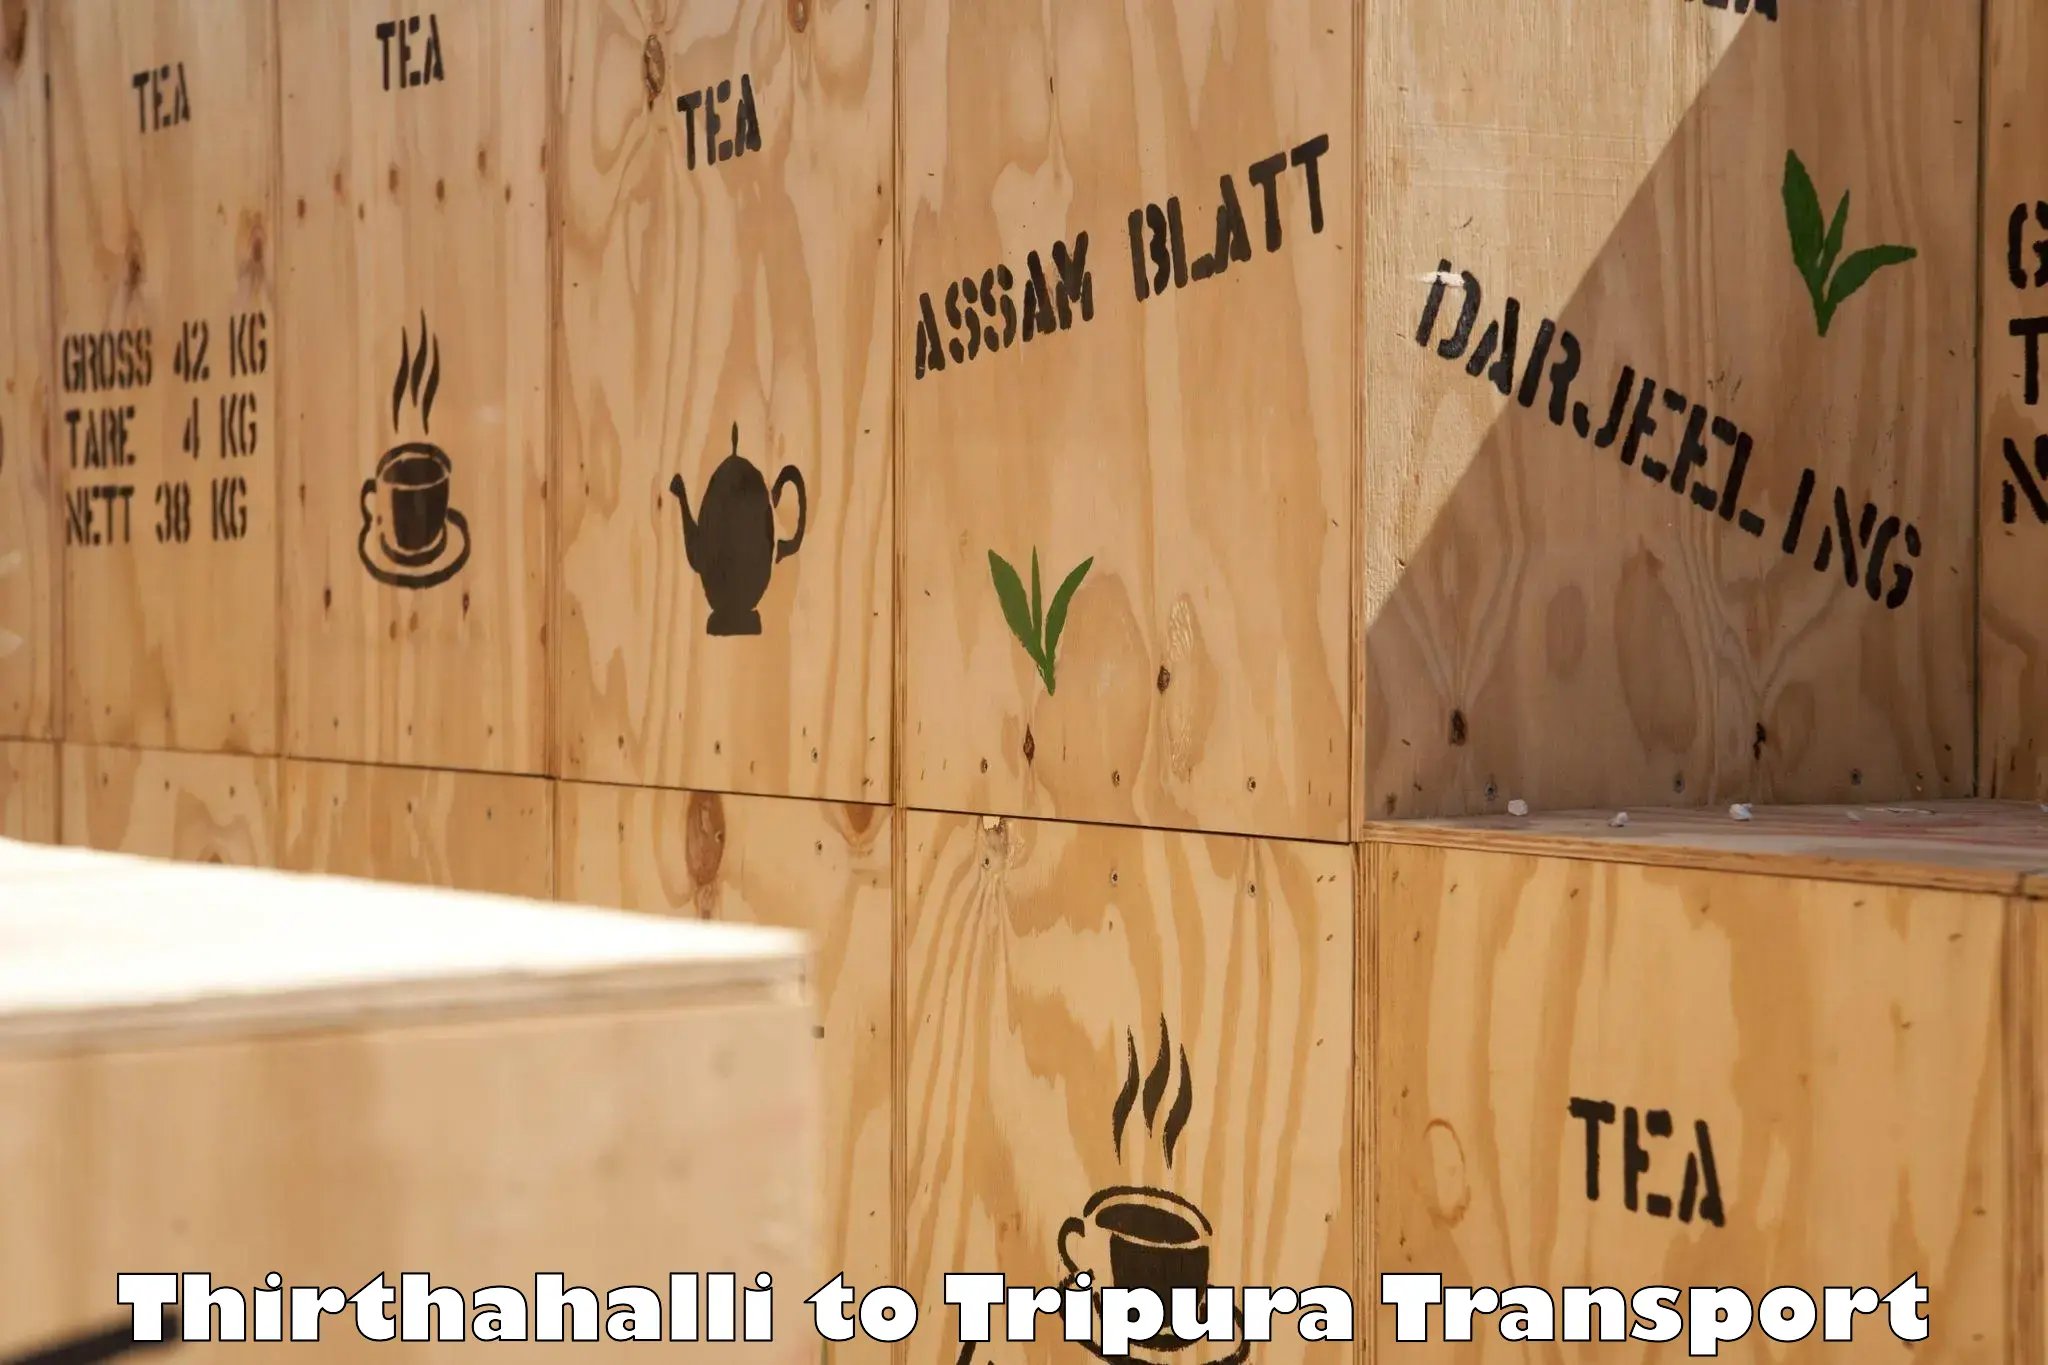 Land transport services Thirthahalli to IIIT Agartala